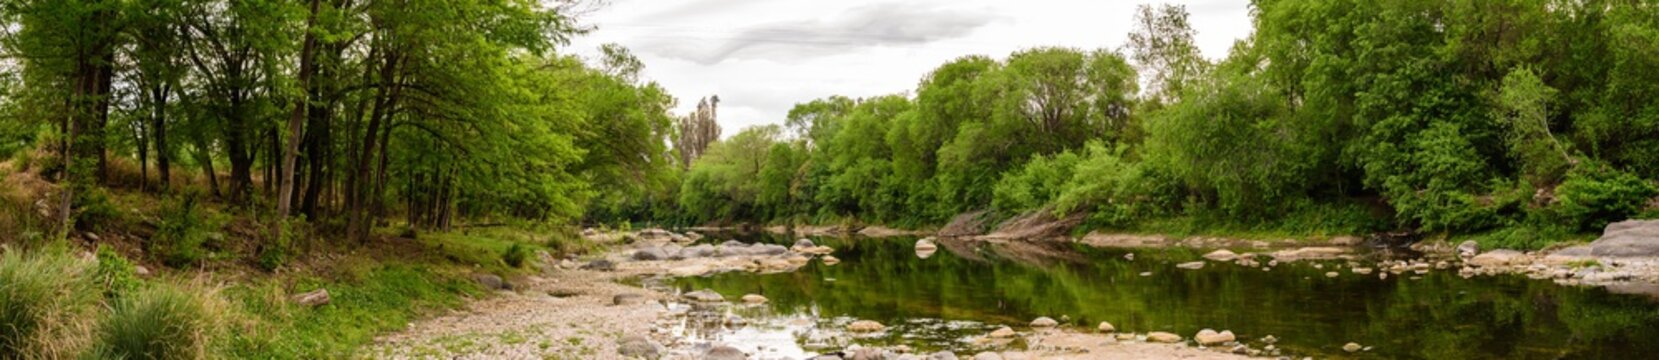 Río serrano con arboleda y bosque en un día nublado de primavera. Paisaje panorámico. Ecosistema serrano